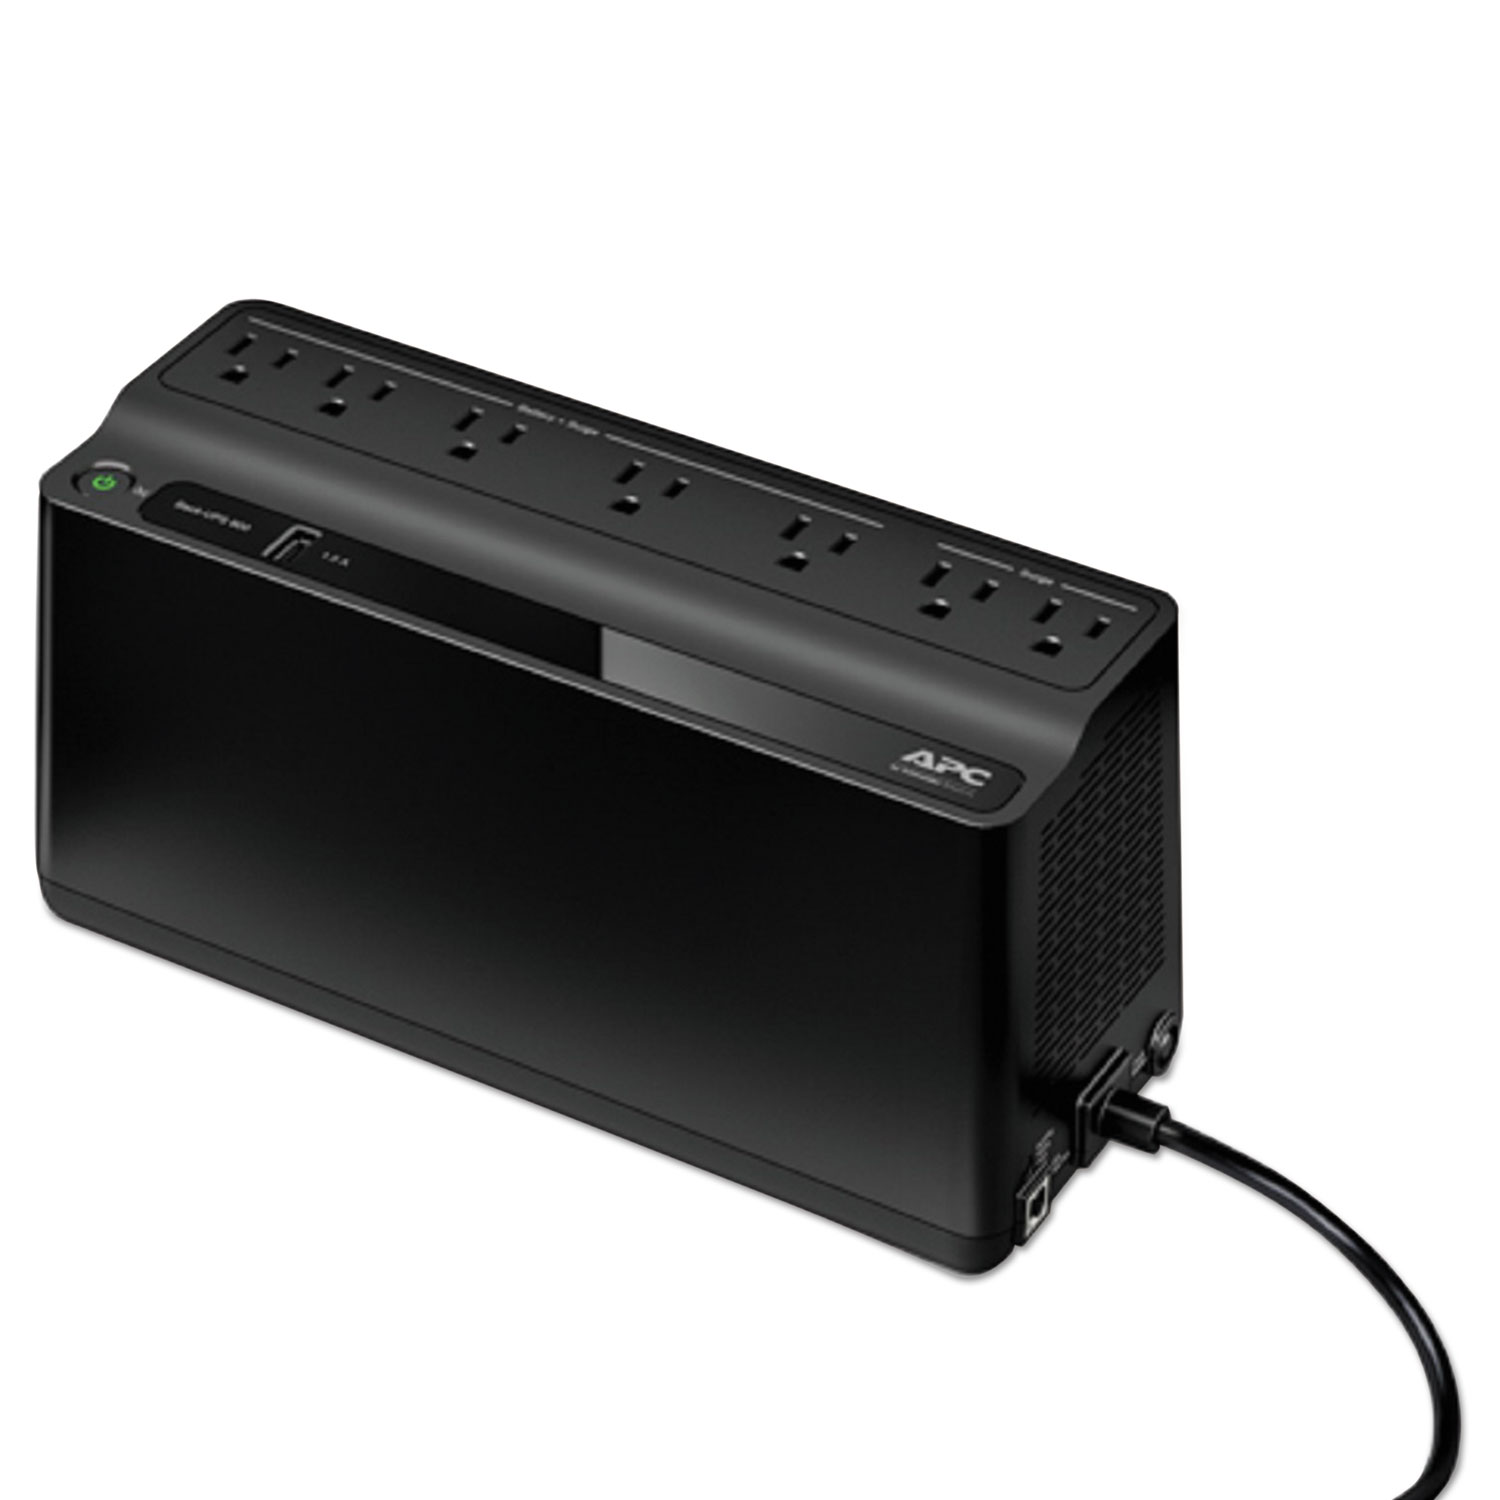 Smart-UPS 600 VA Battery Backup System, 7 Outlets, 490 J